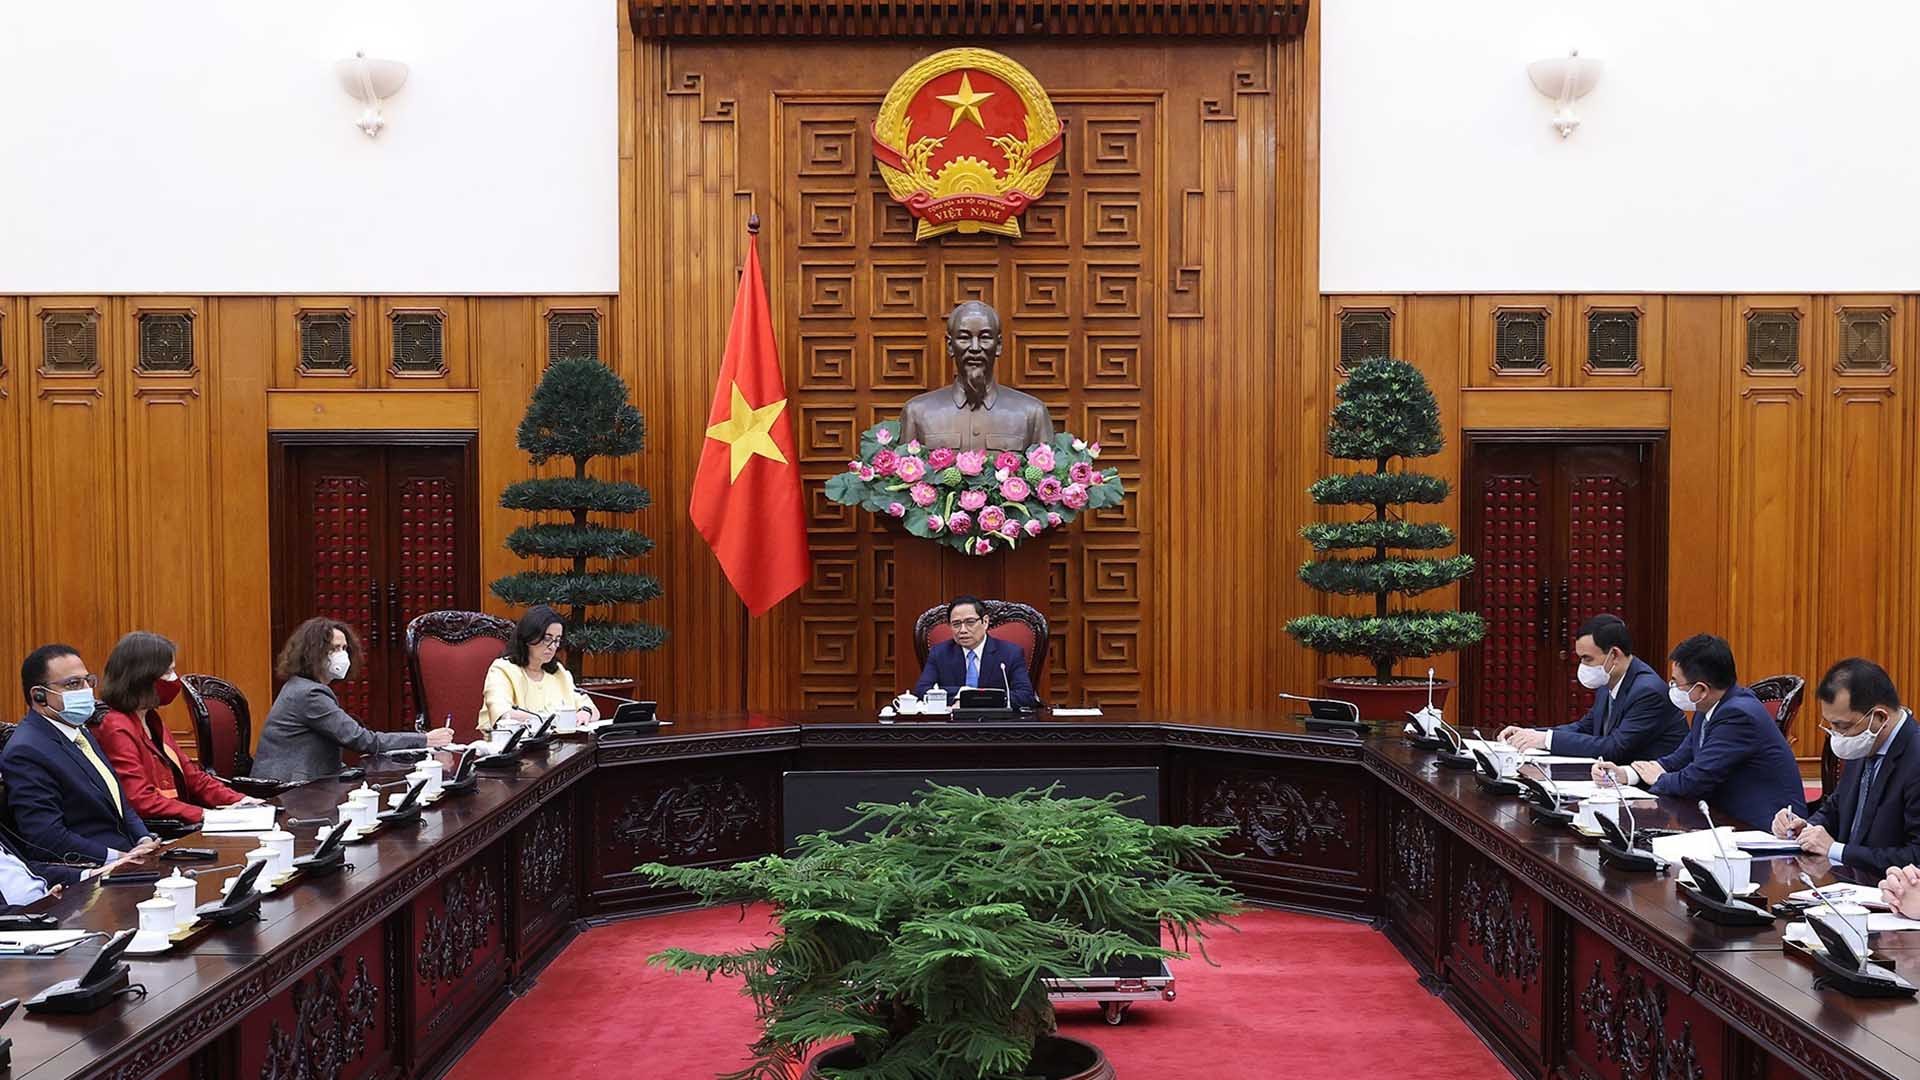 Thủ tướng Phạm Minh Chính tiếp Phó Chủ tịch Ngân hàng Thế giới phụ trách khu vực Đông Á và Thái Bình Dương